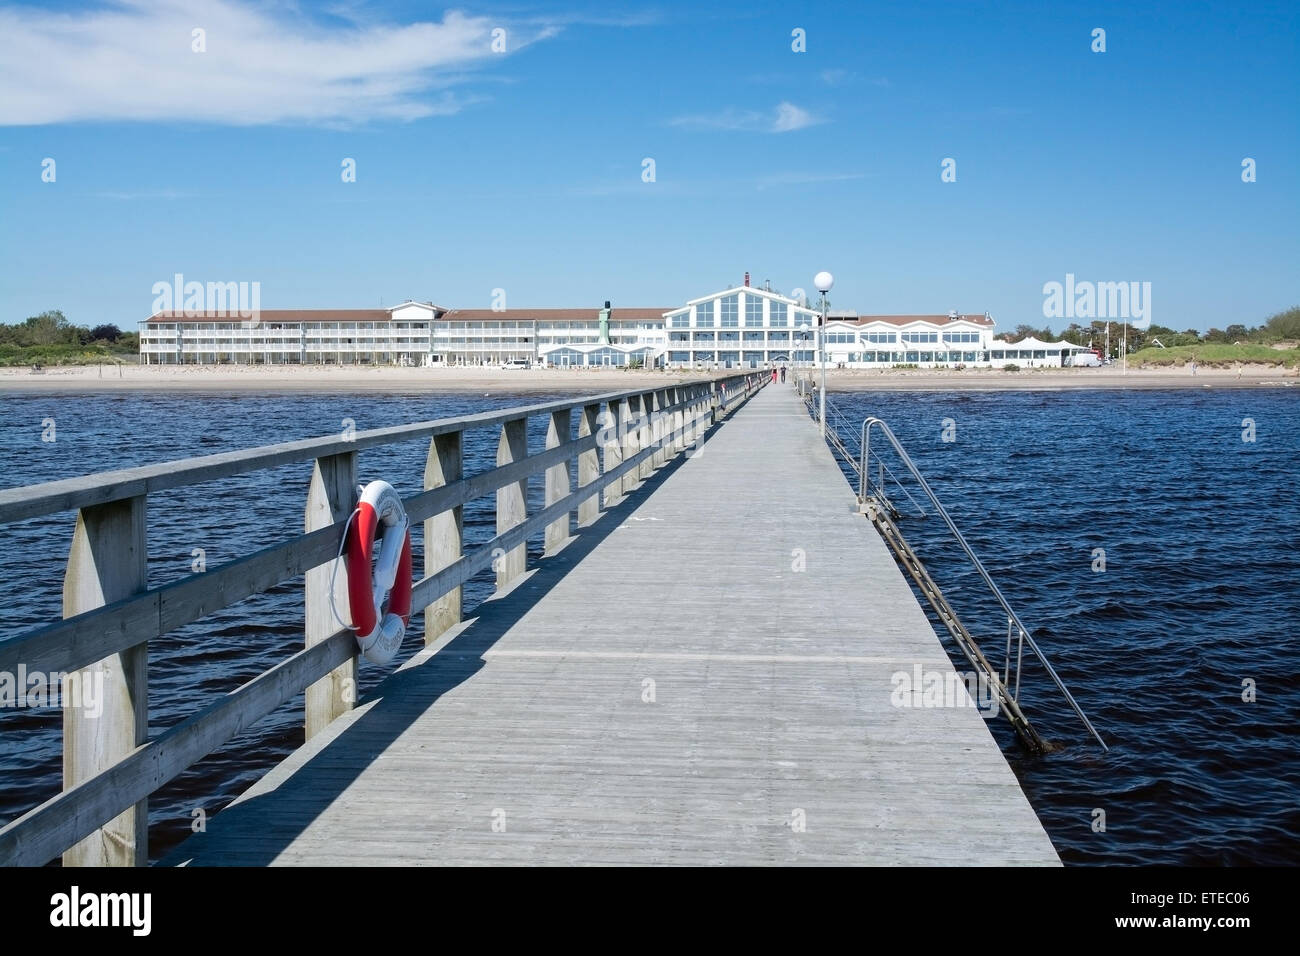 Strandbaden Falkenberg wooden pier before summer tourist season on June 5, 2015 in Falkenberg Stock Photo